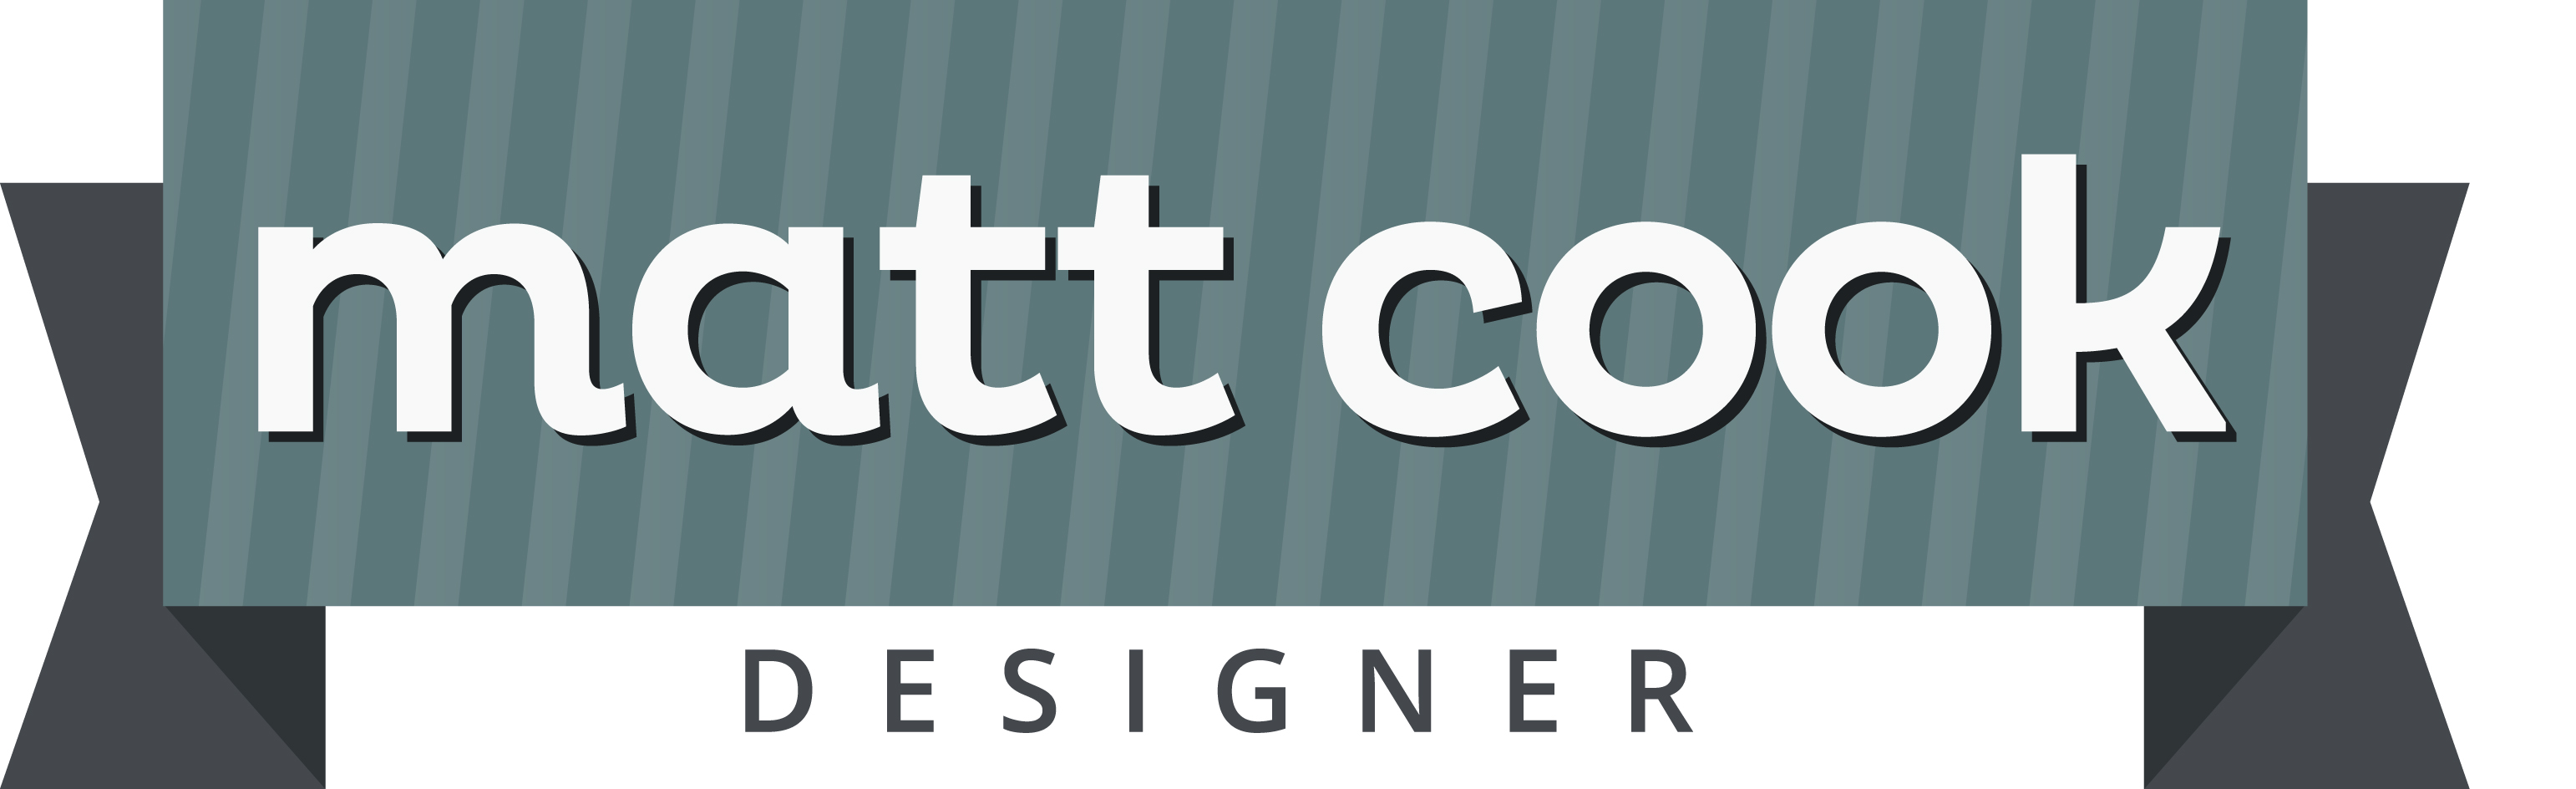 Matt Cook Design Services